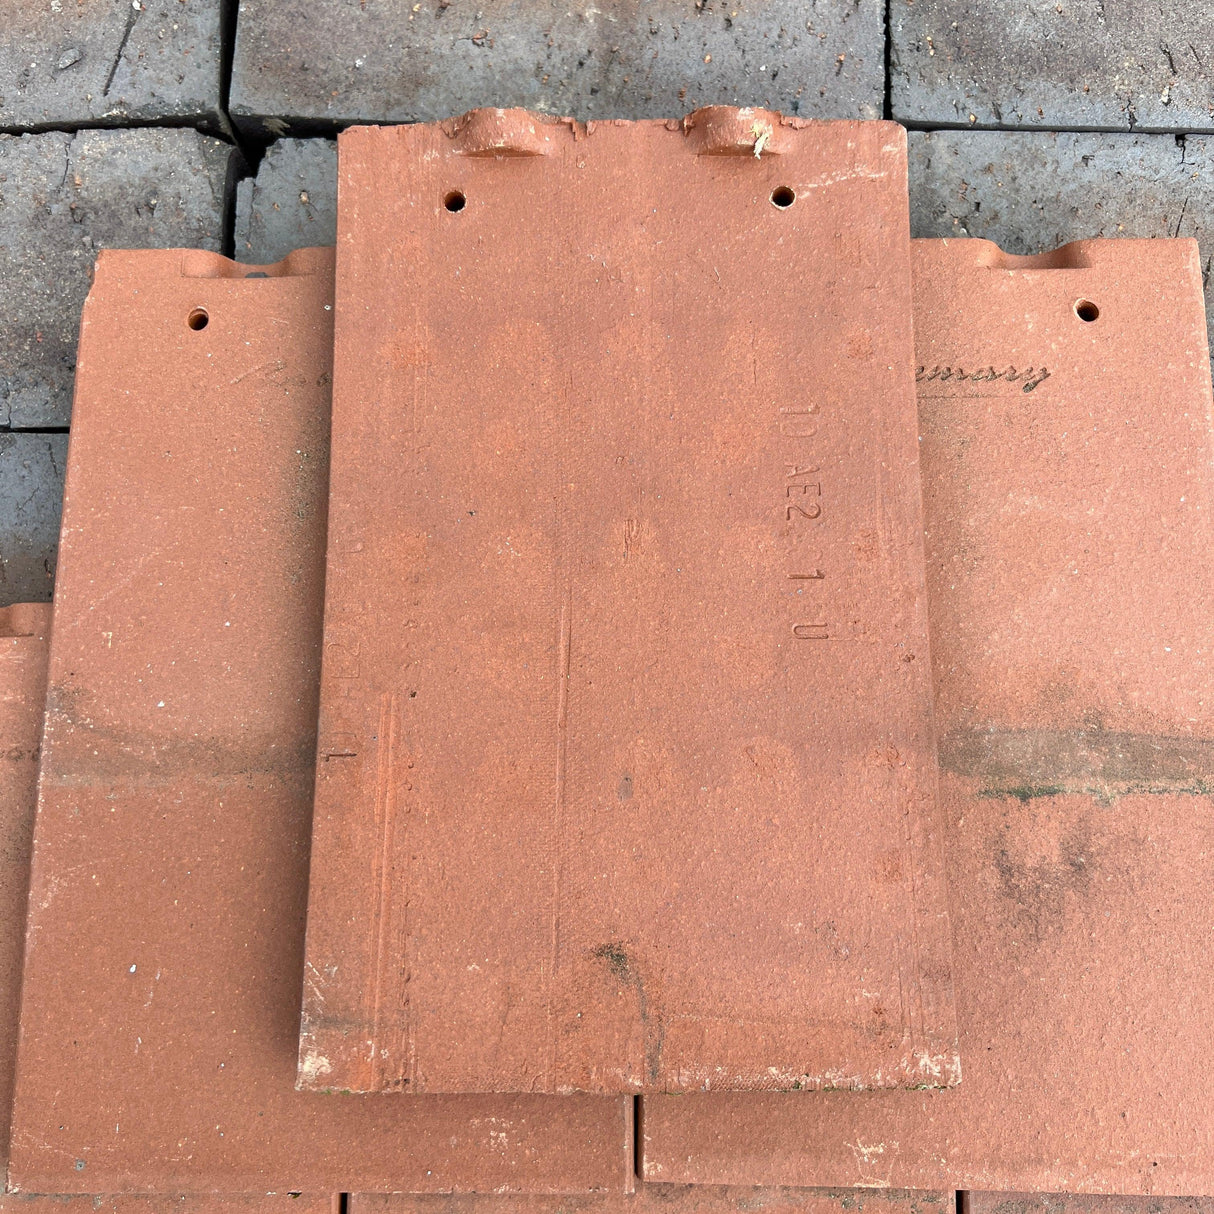 Reclaimed Rosemary Clay Roof Tiles - Reclaimed Brick Company